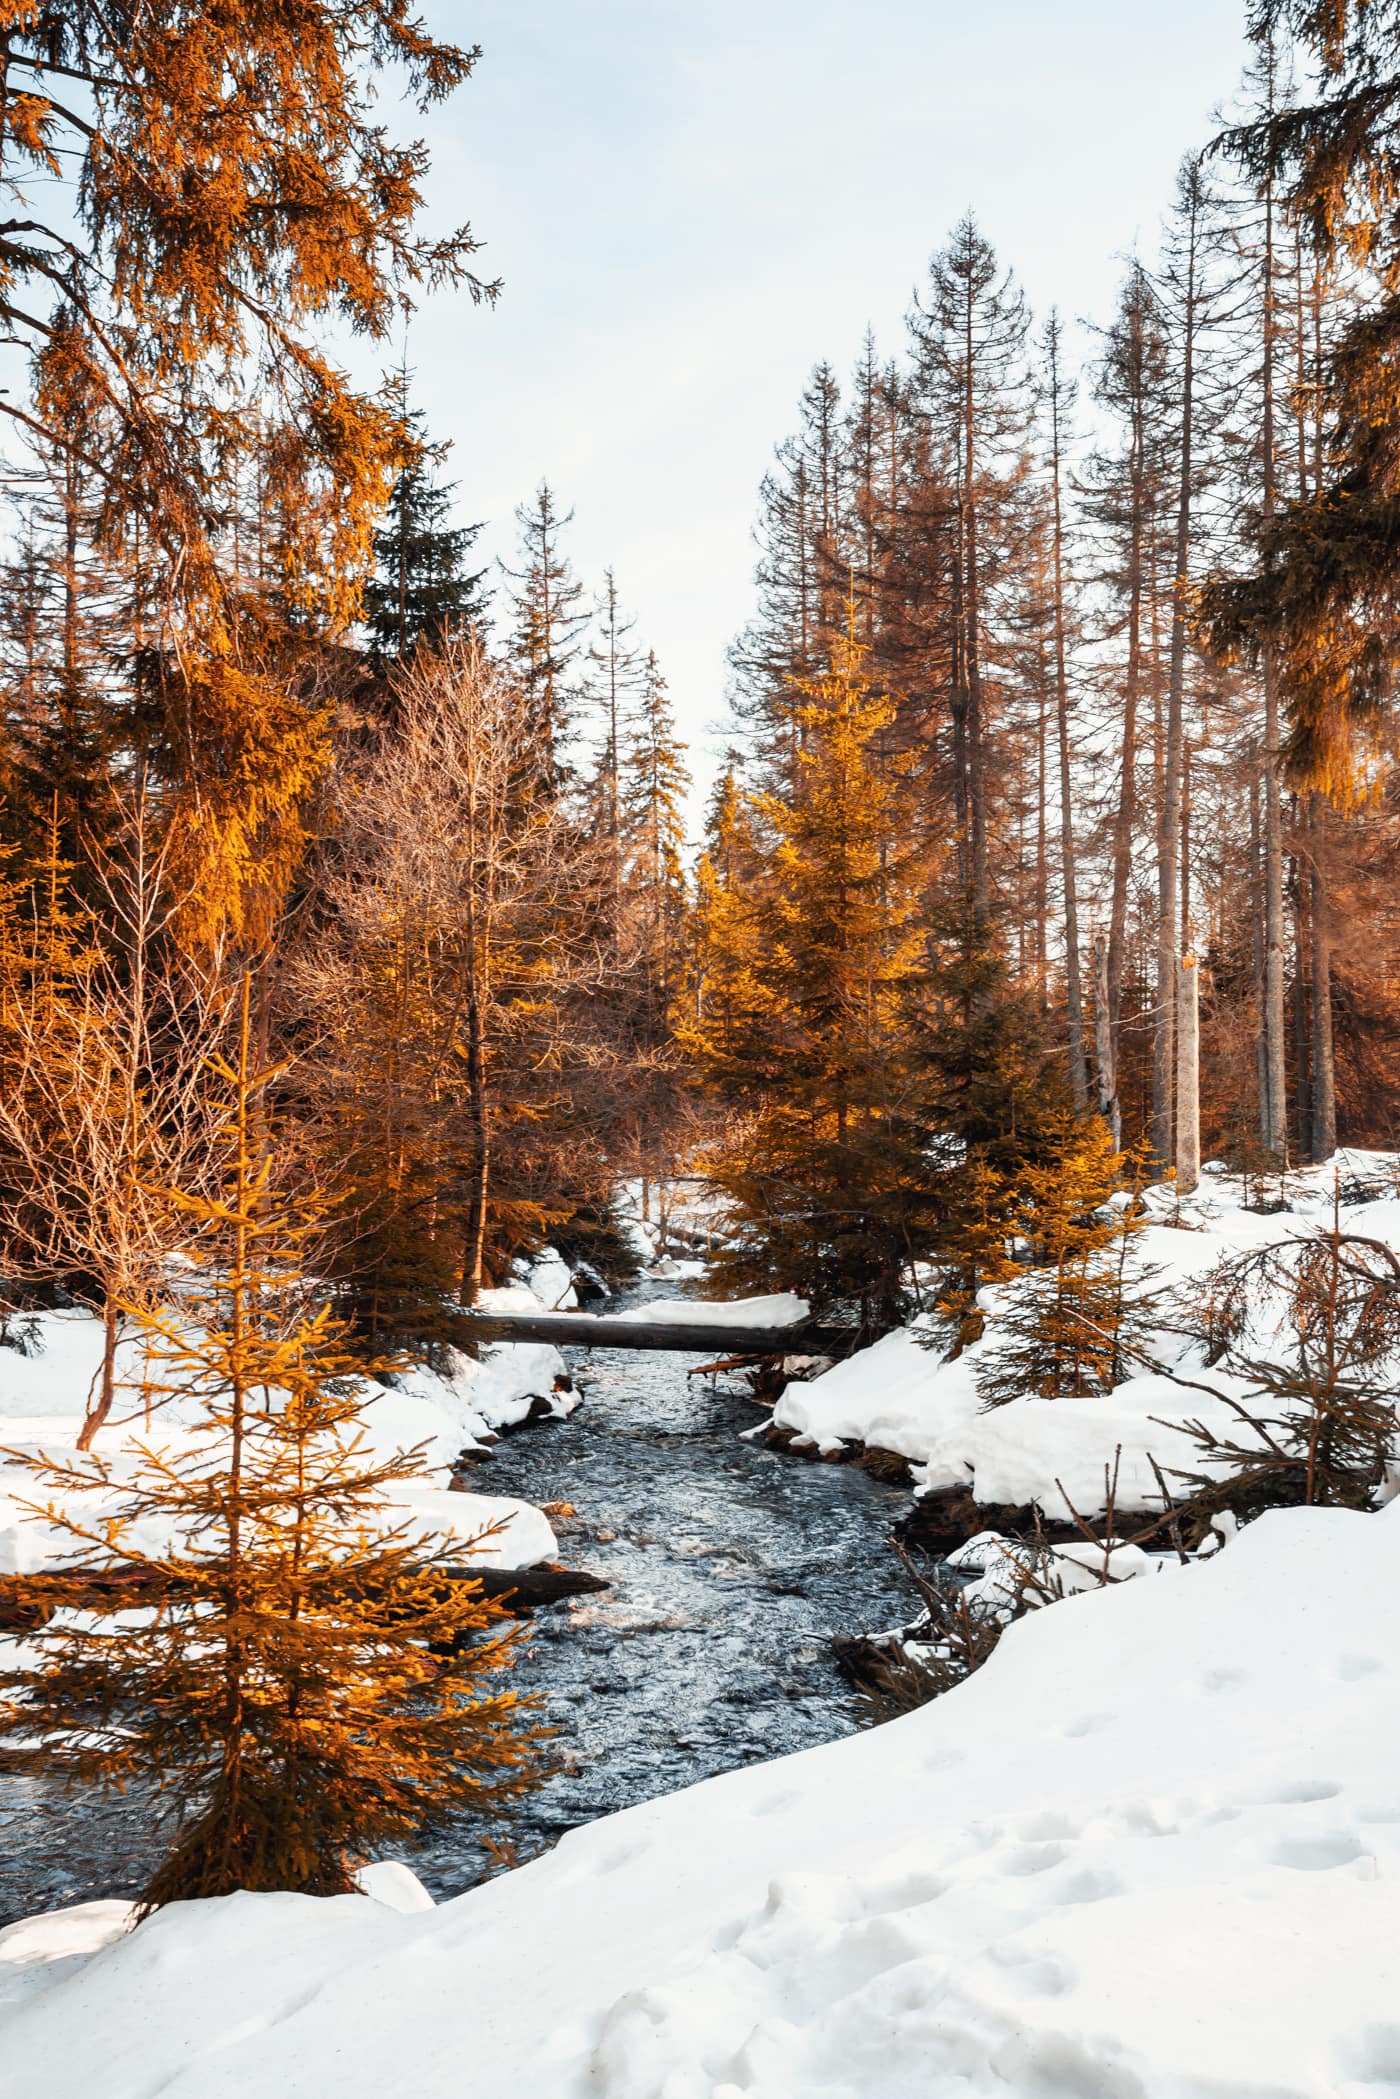 Winter am Oderteich Stausee im Harz bei Goslar und Braunlage, Niedersachsen, Deutschland, Europa